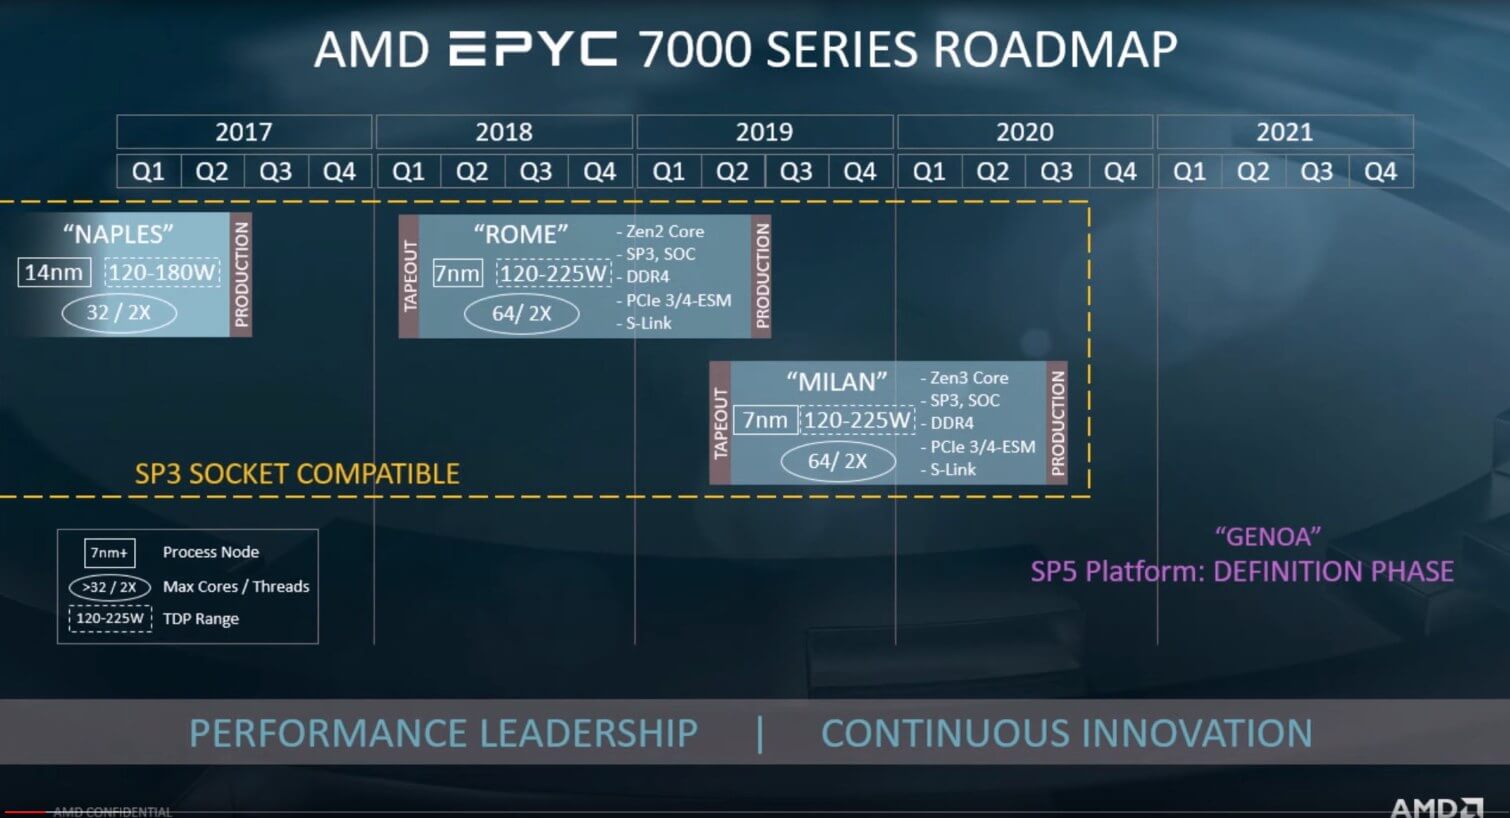 AMD details Zen 3 and Zen 4 alongside roadmap for next-gen Epyc Milan and Genoa CPUs